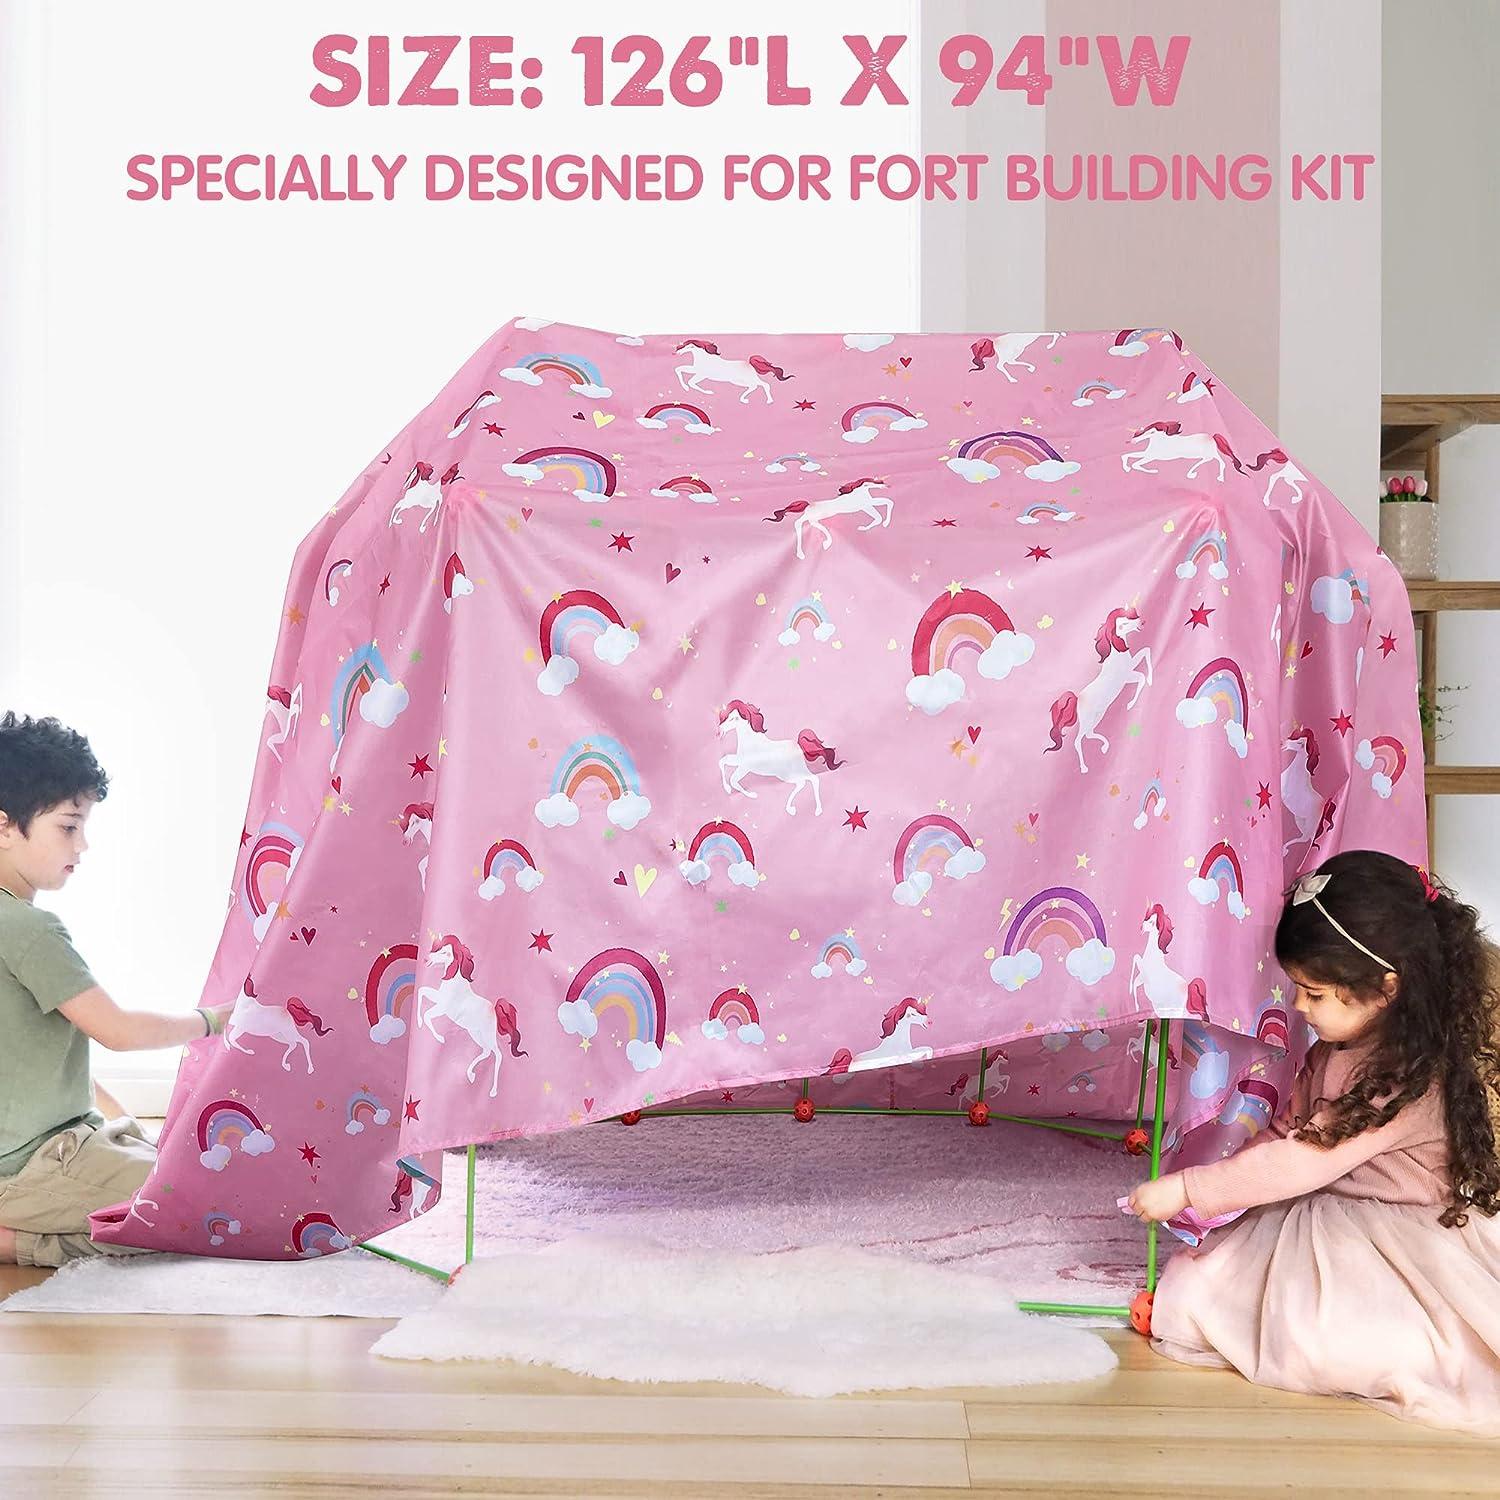 Blanket Fort for Kids, Fits Fort Building Kit, Kids Fort, Pink